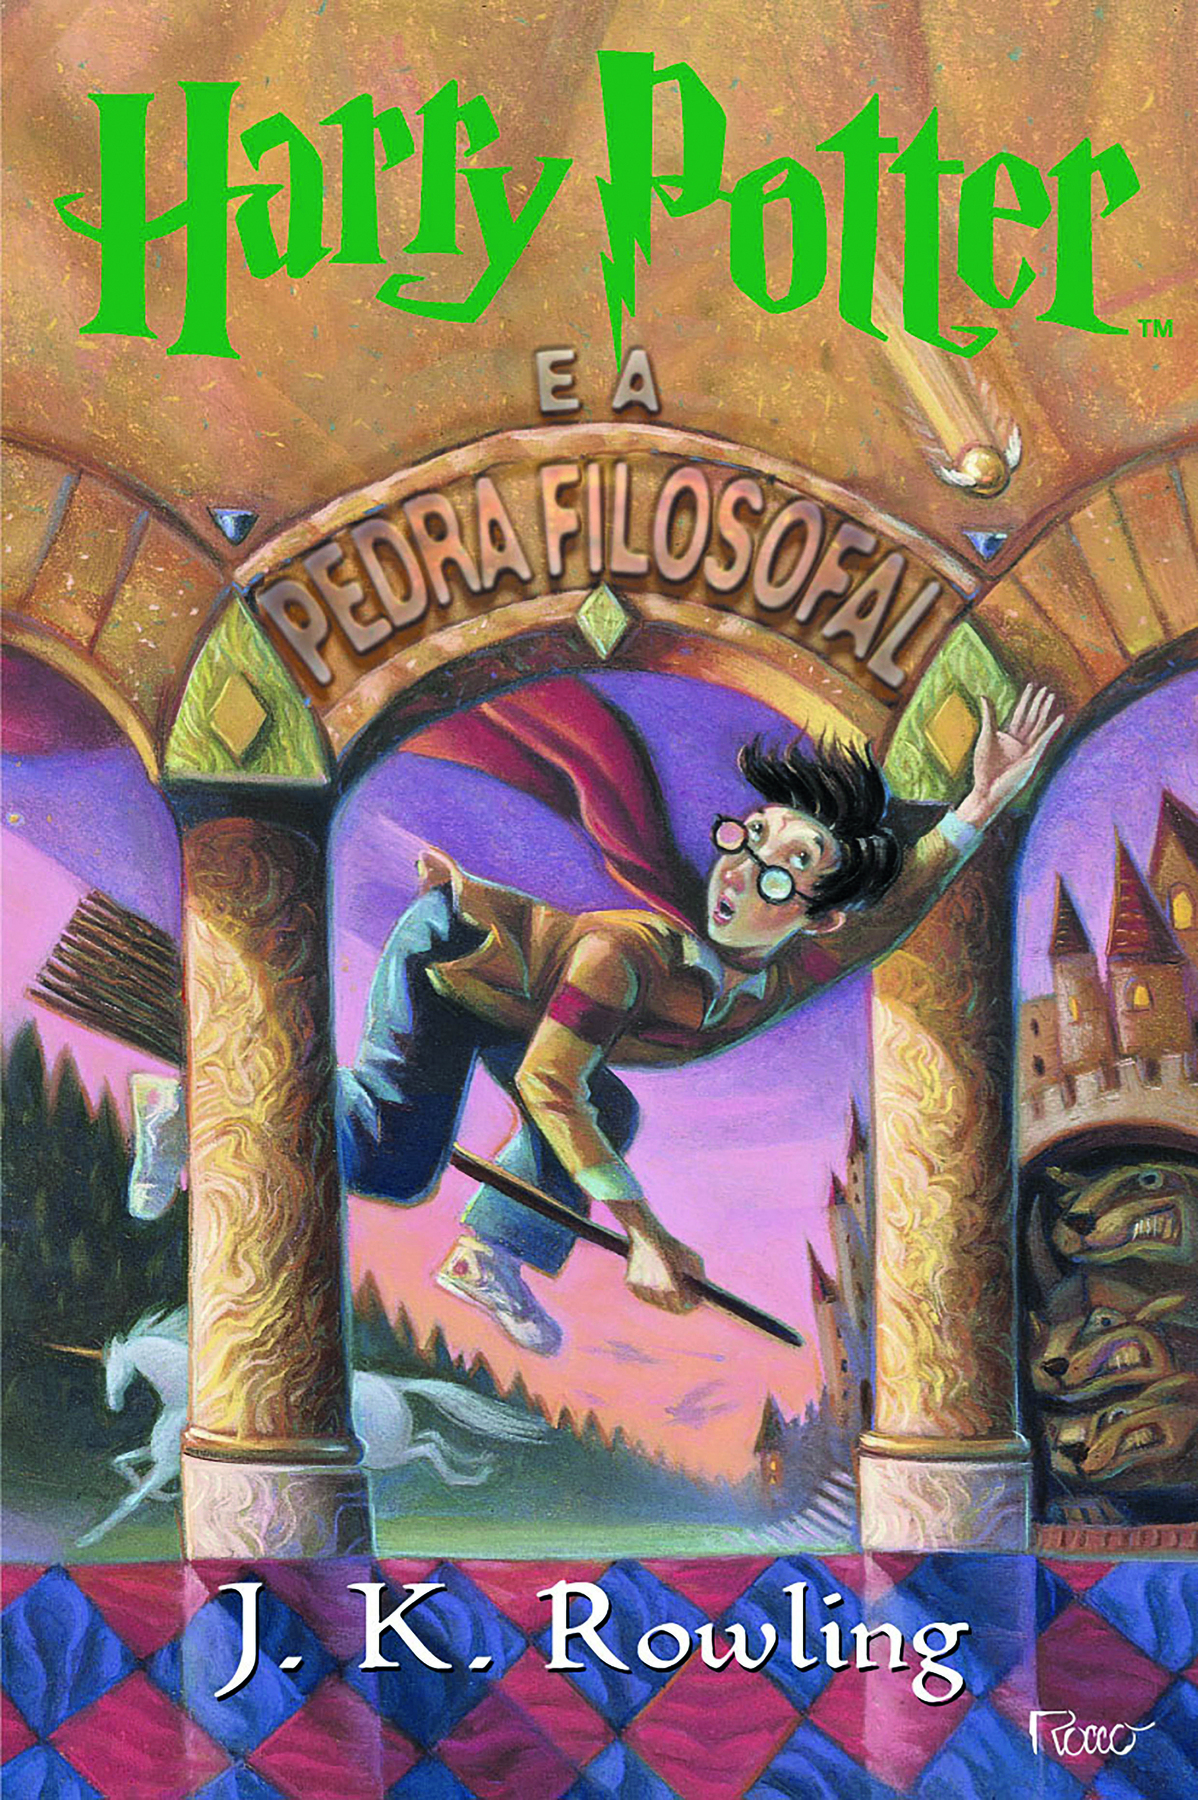 Capa de livro. Capa composta da ilustração de um menino de cabelos curtos pretos, usando blusa amarela, calça azul, uma capa vermelha e óculos; ele está sobre uma vassoura, voando, entre dois pilares de uma construção antiga. Ao fundo há um unicórnio branco, vegetação de pinheiros e um castelo. Na parte superior há o título do livro: HARRY POTTER E A PEDRA FILOSOFAL. Na parte inferior há o nome da autora: J. K. Rowling.